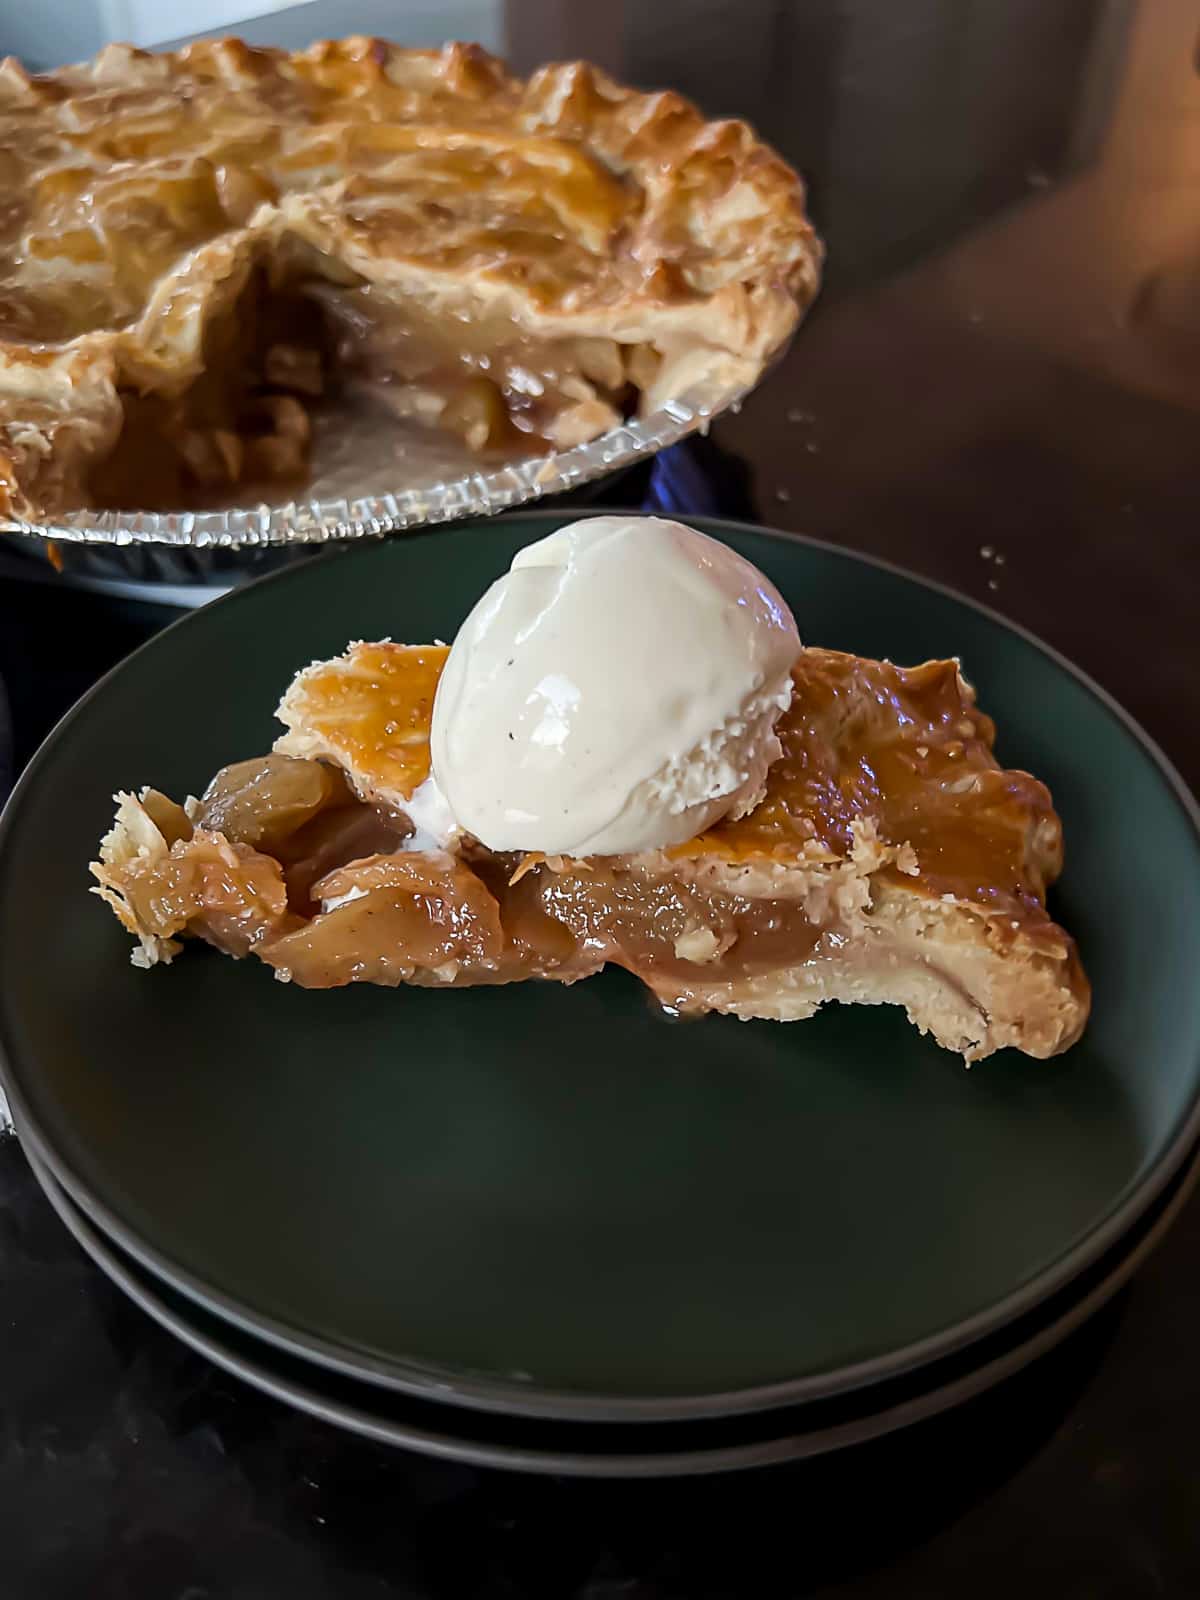 Slice of Traeger Smoked Apple Pie Recipe With Vanilla Ice Cream